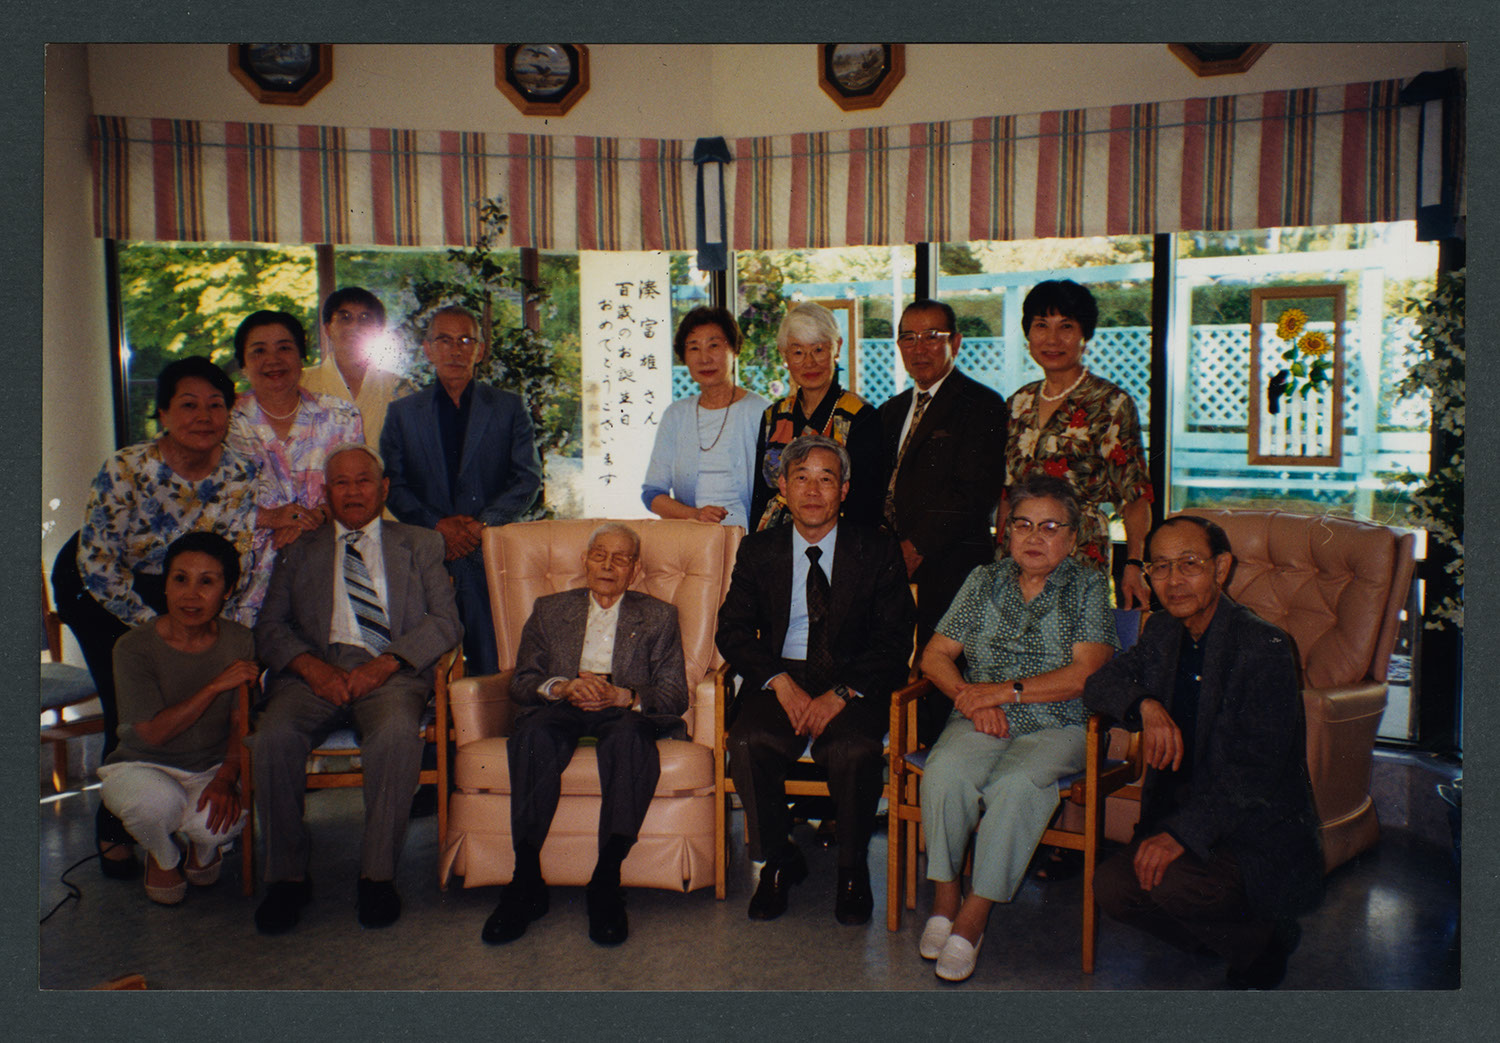 100th birthday celebration of Mr. Minato: Recto